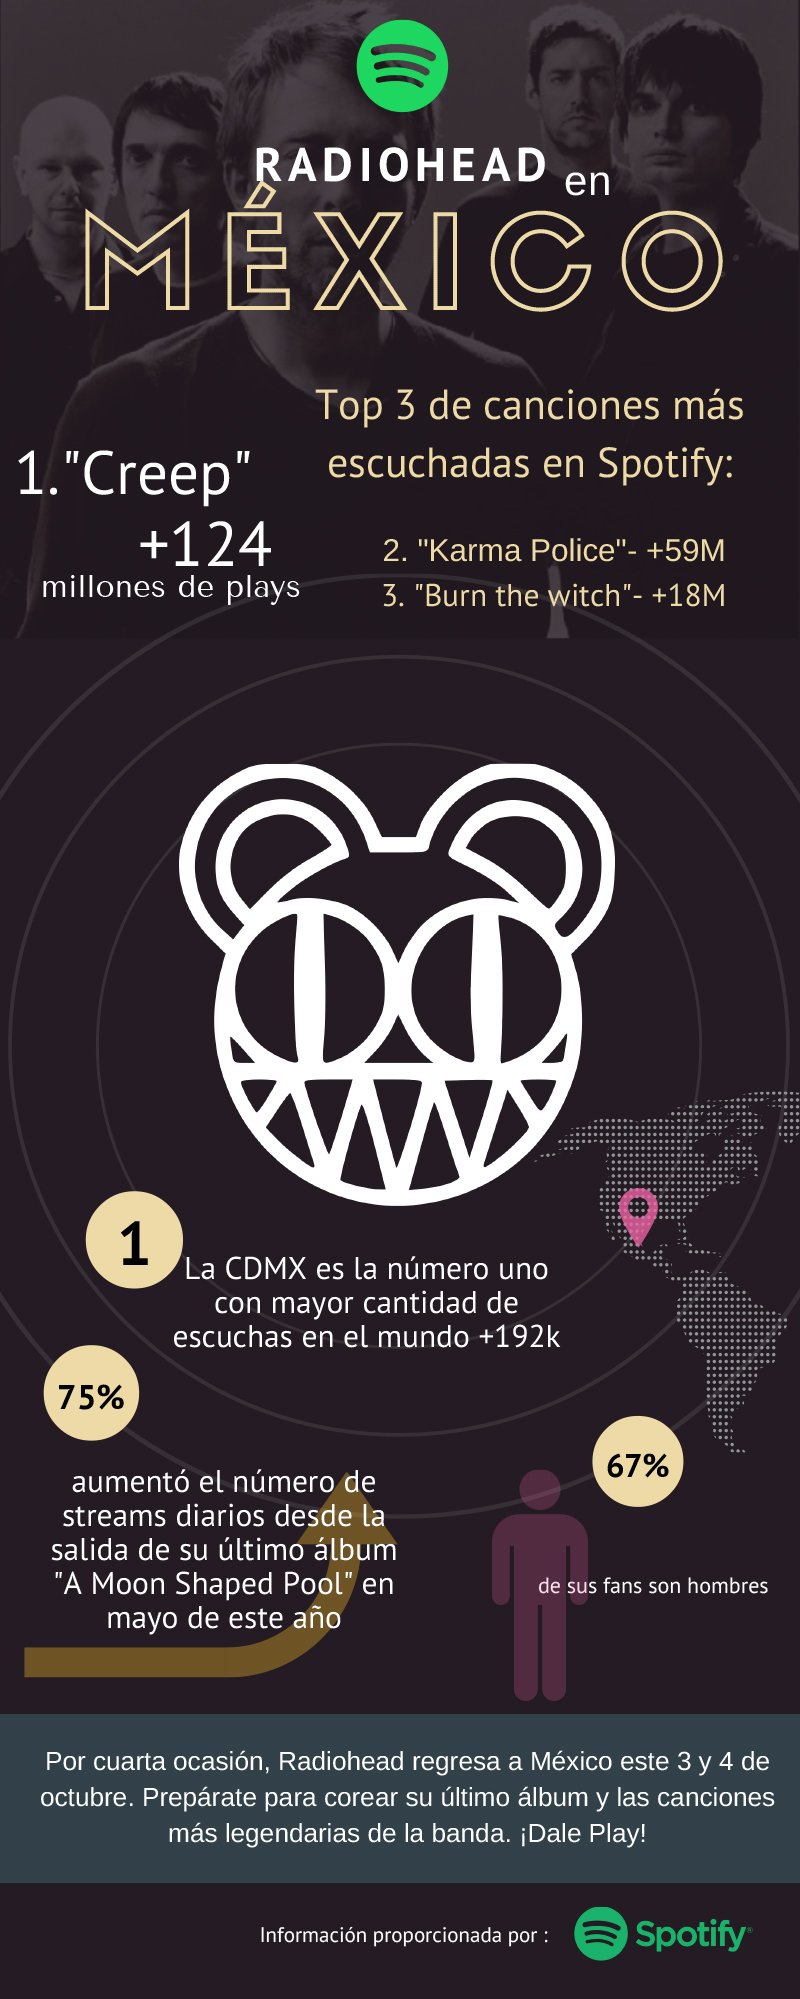 Radiohead en Spotify | Concierto en la ciudad de México